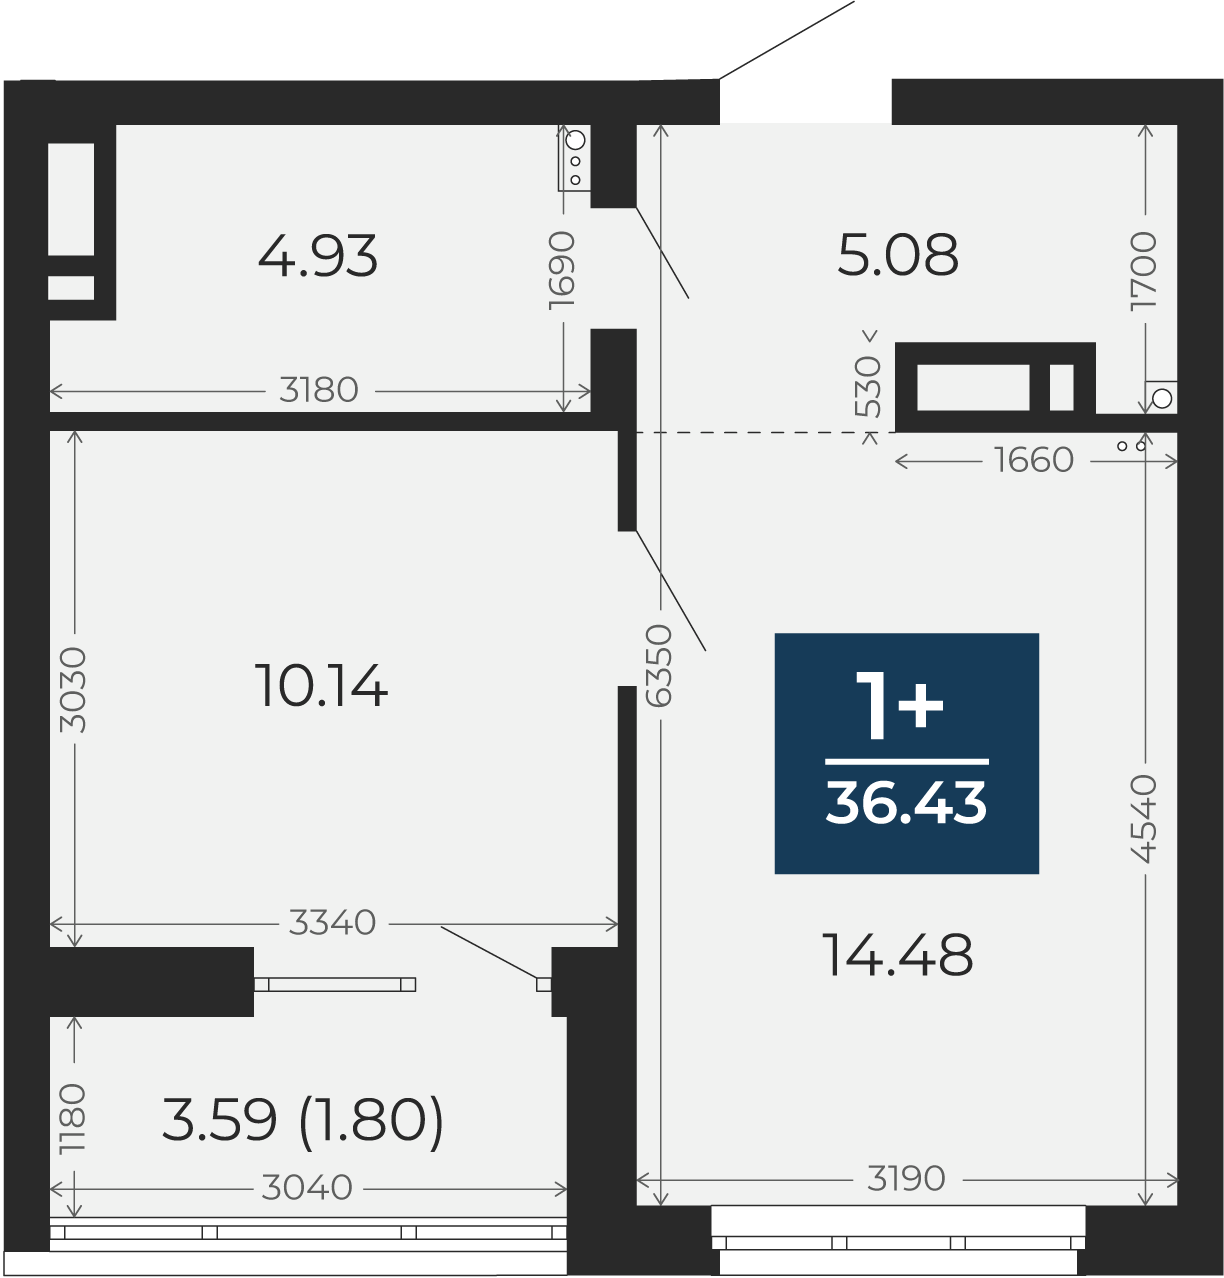 Квартира № 236, 1-комнатная, 36.43 кв. м, 11 этаж